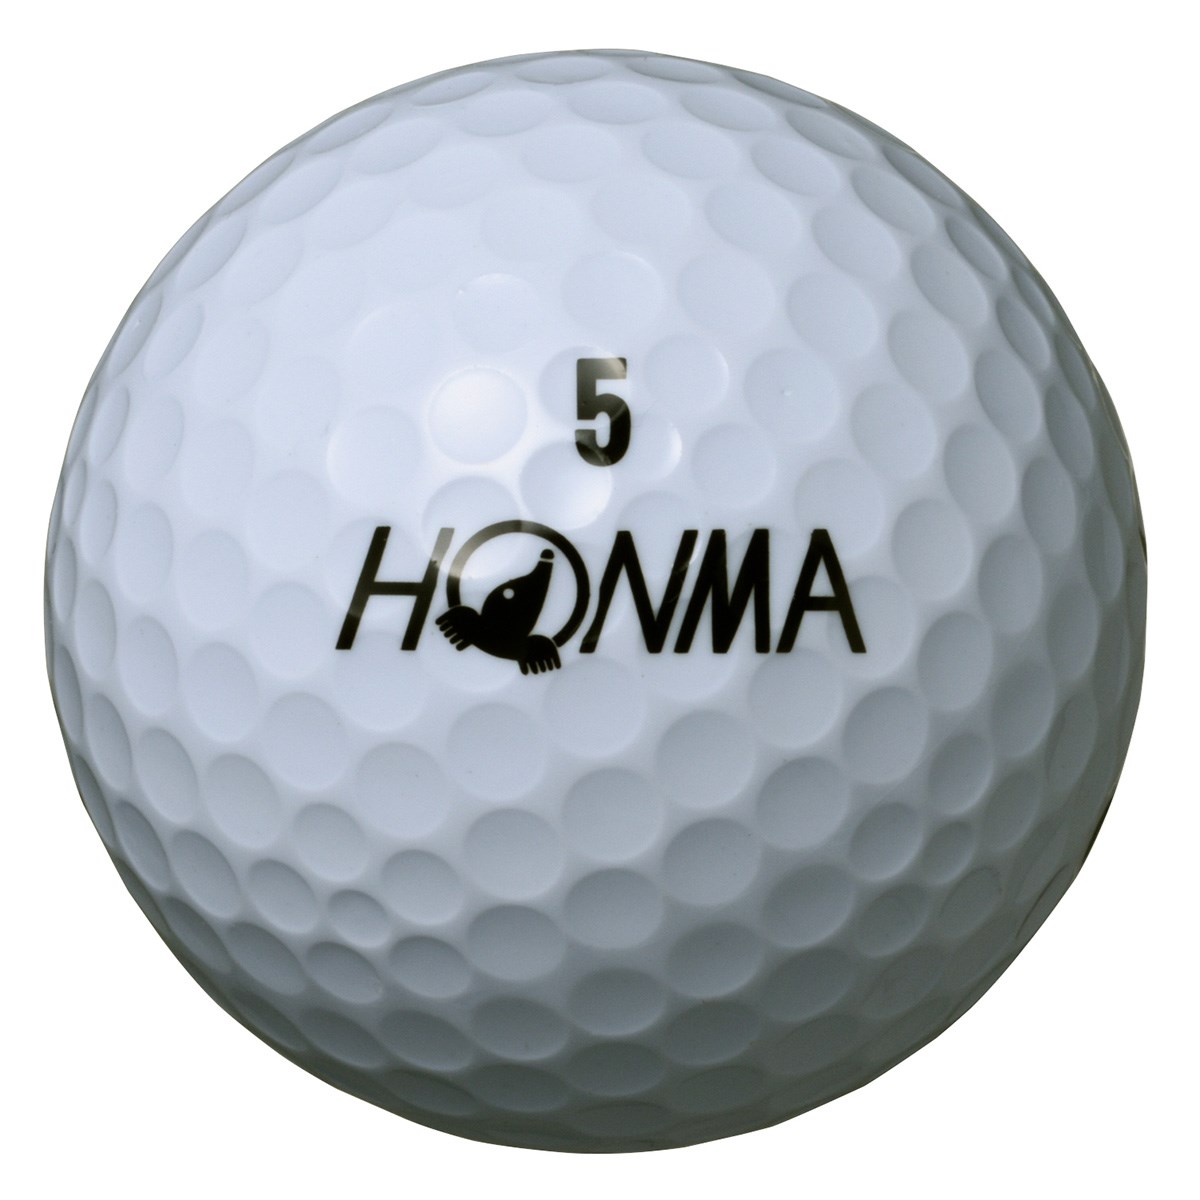 D1 ボール 年モデル 本間ゴルフ Honma 通販 Gdoゴルフショップ